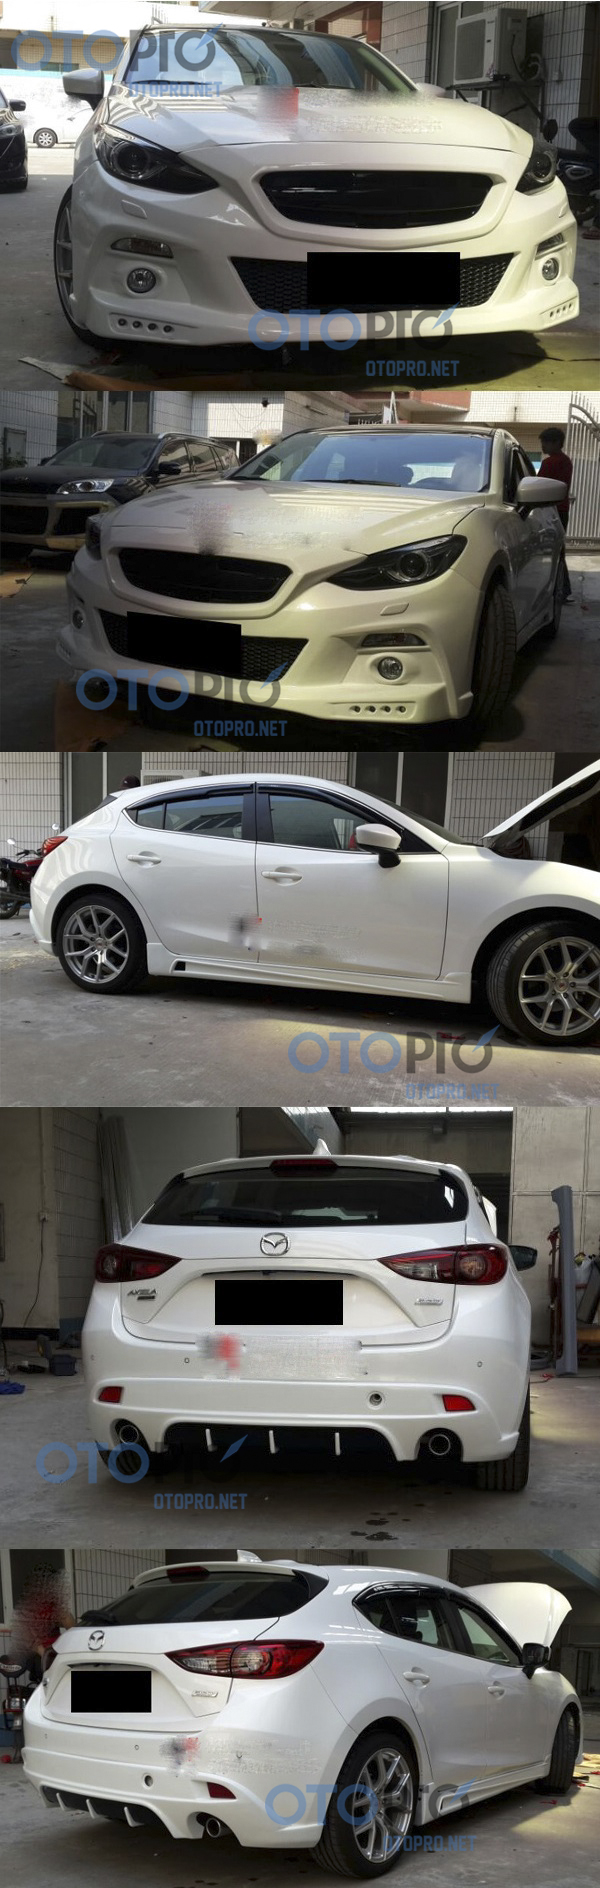 Bodylips cho xe Mazda 3 Hatchback 2015 mẫu Autoexe